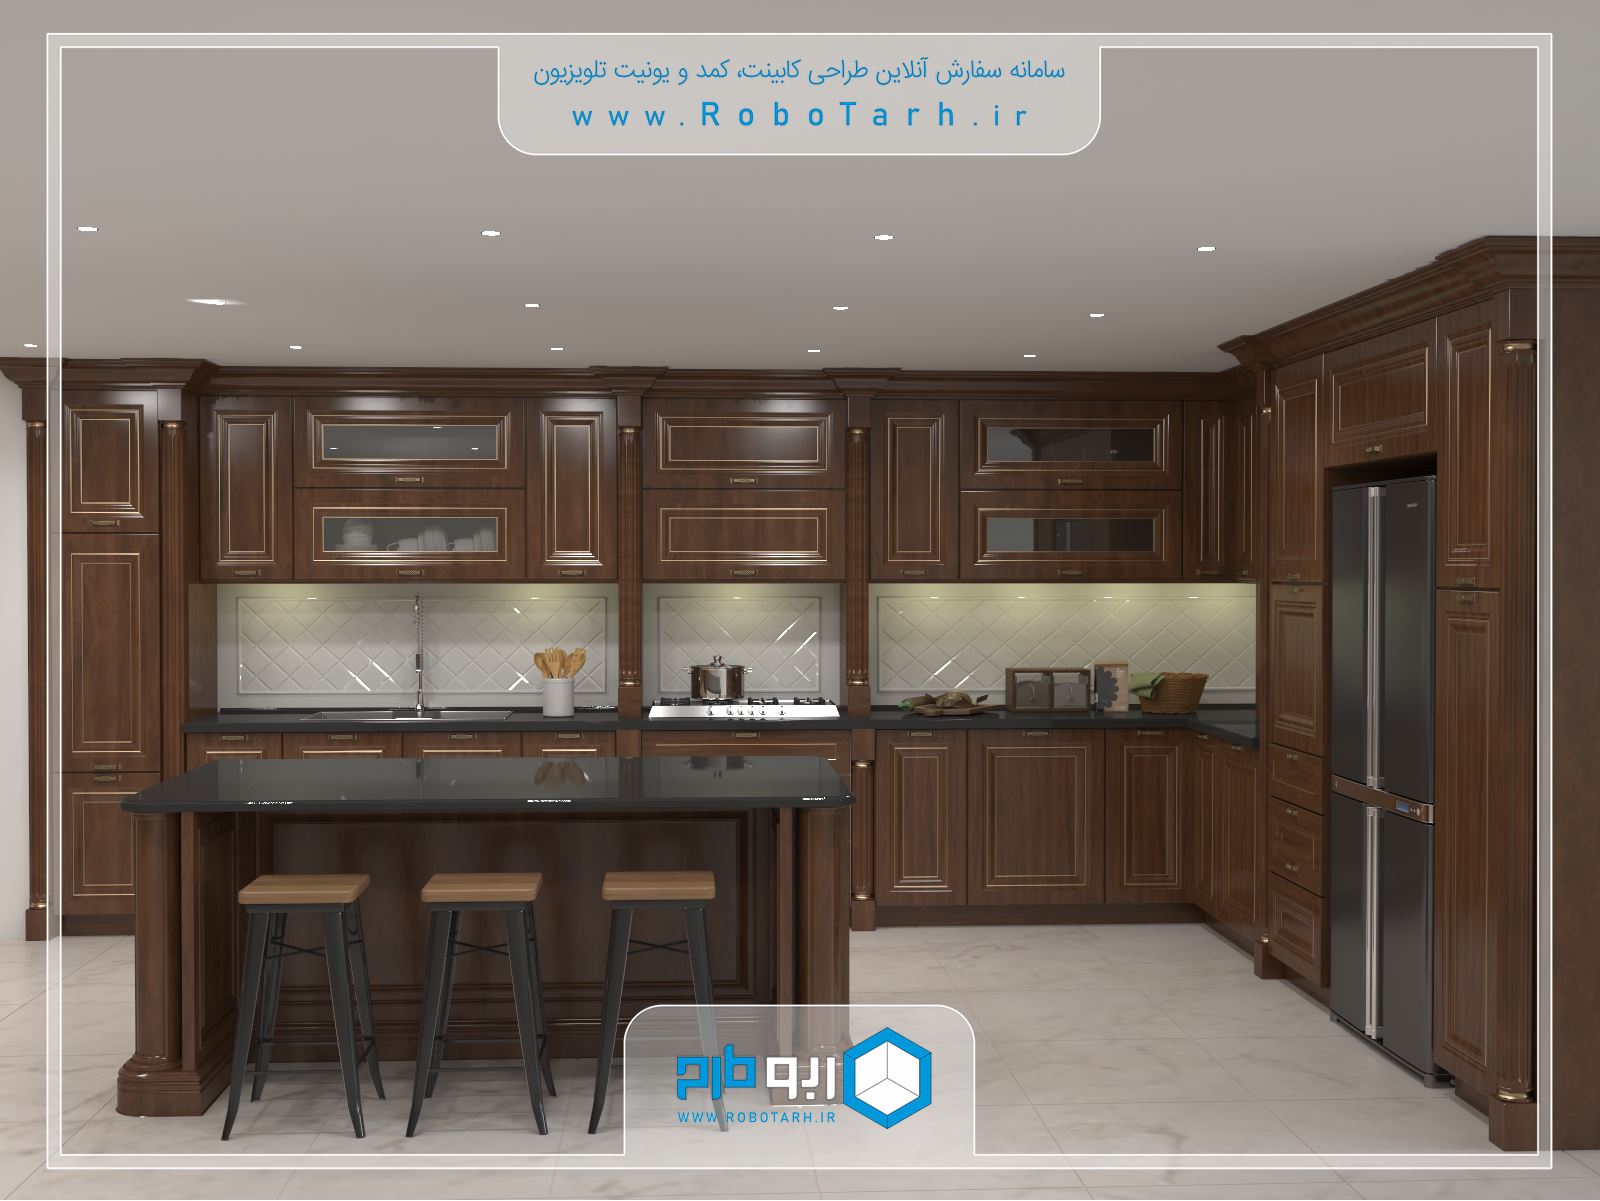 طراحی کابینت آشپزخانه کلاسیک (ممبران) قهوه ای و طلایی با چیدمان ال شکل - ربوطرح